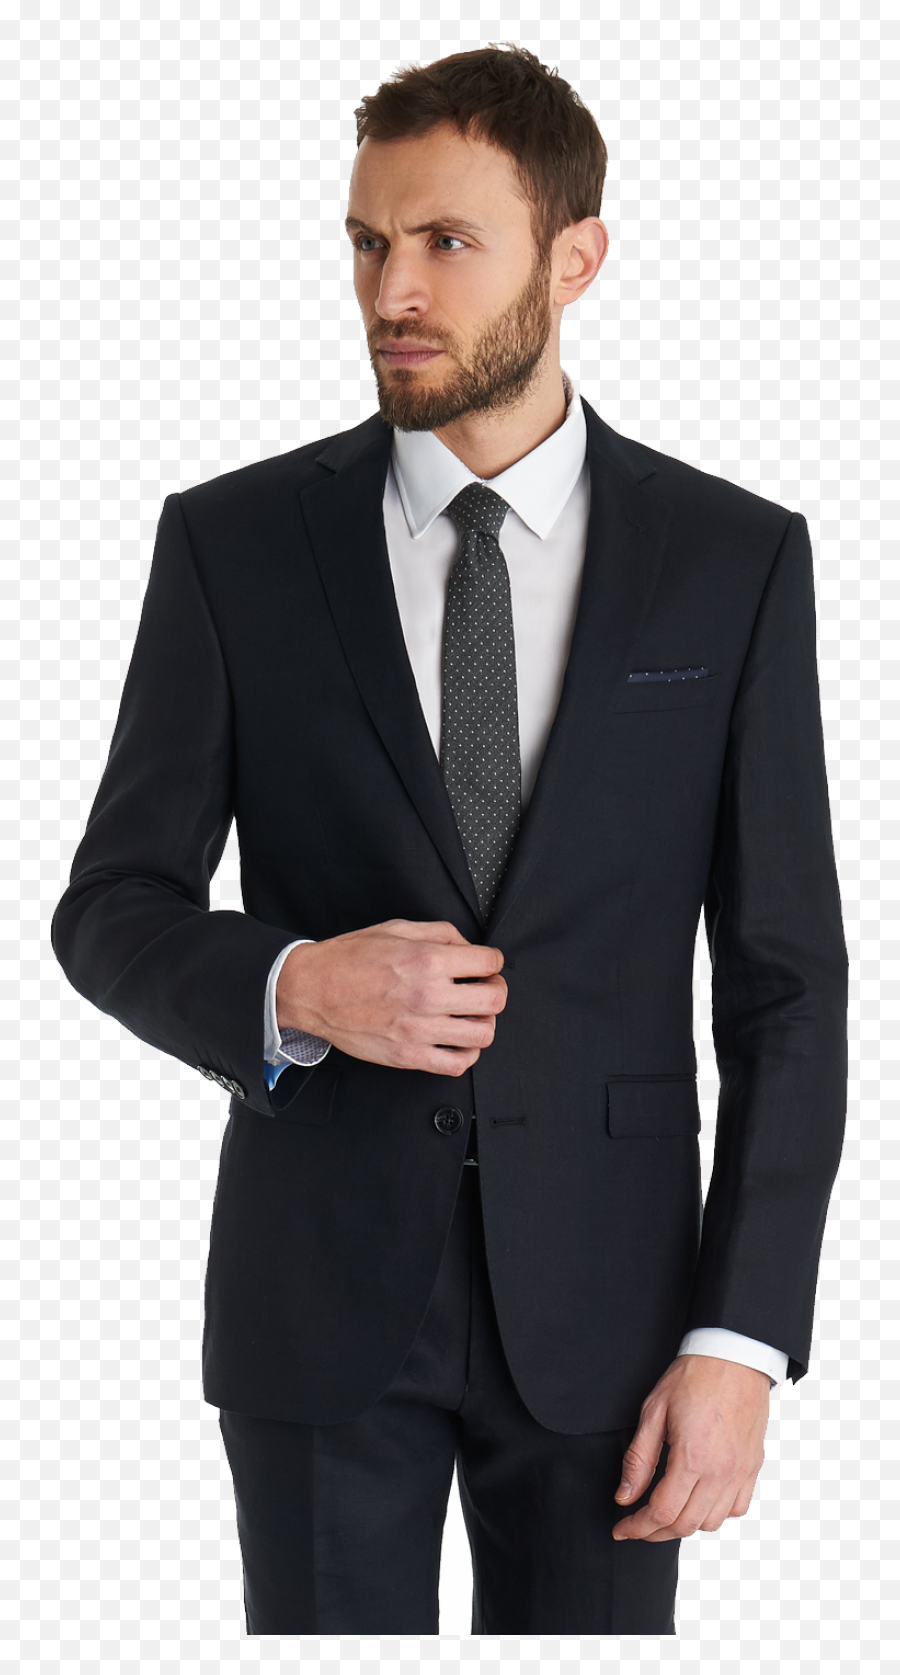 Suit Png Images Free Download - Coat Pant Men Png,Suit Transparent Background